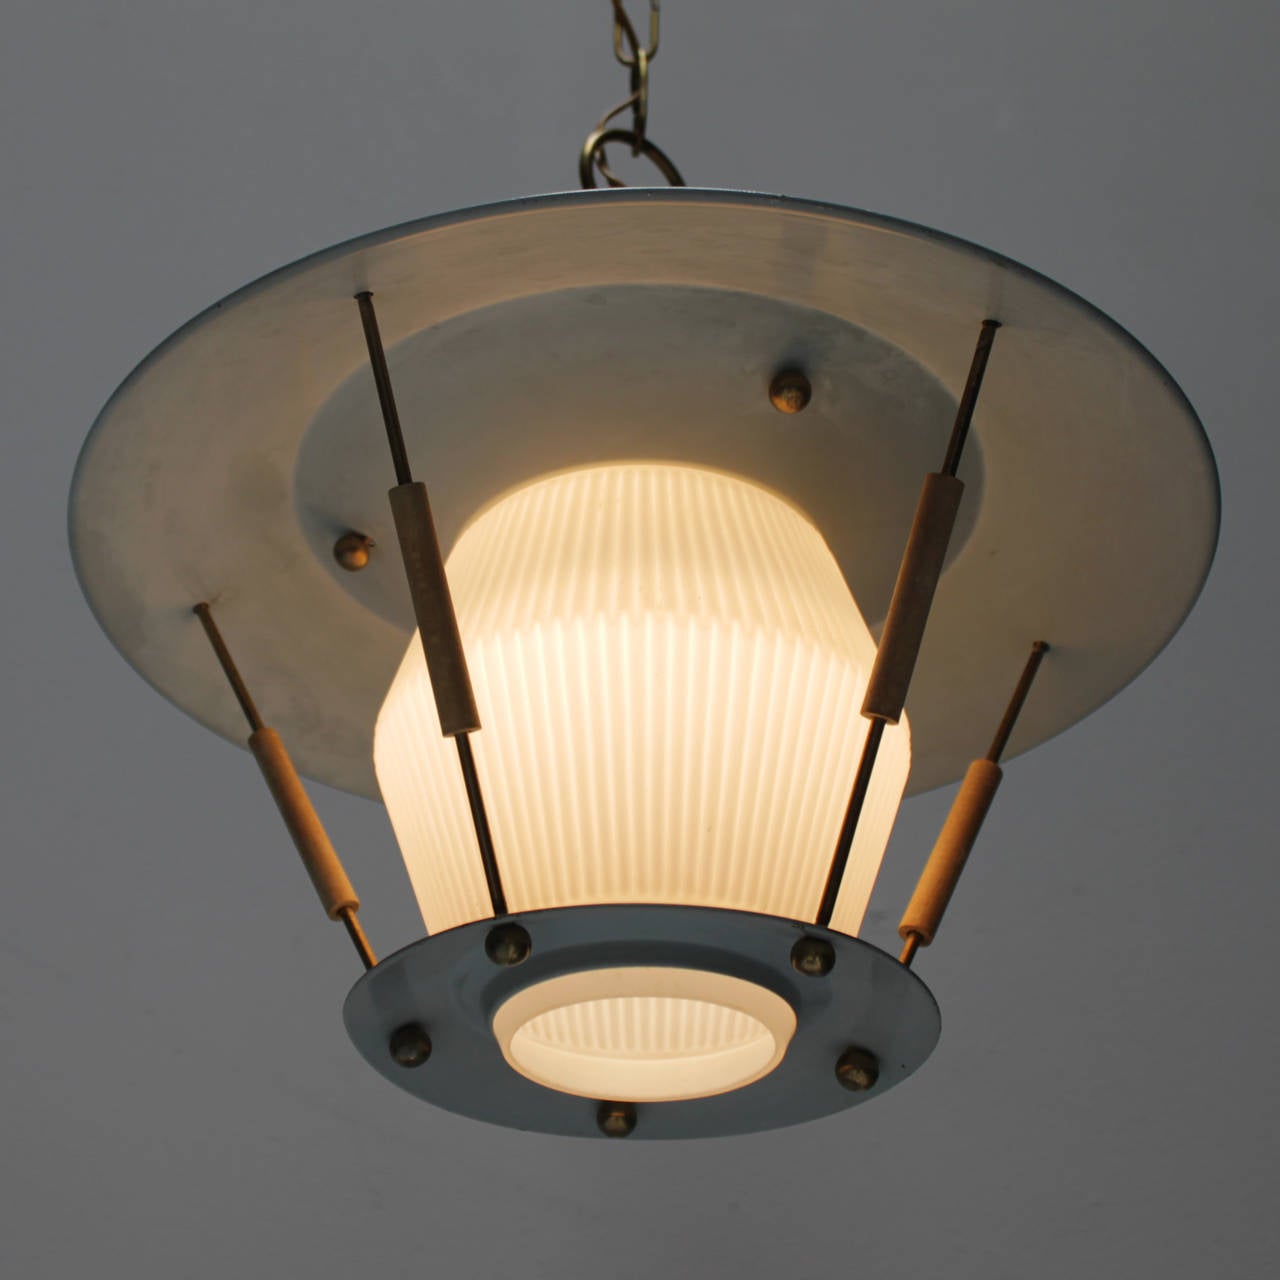 Mid-20th Century Italian Lantern in the Style of Arredoluce